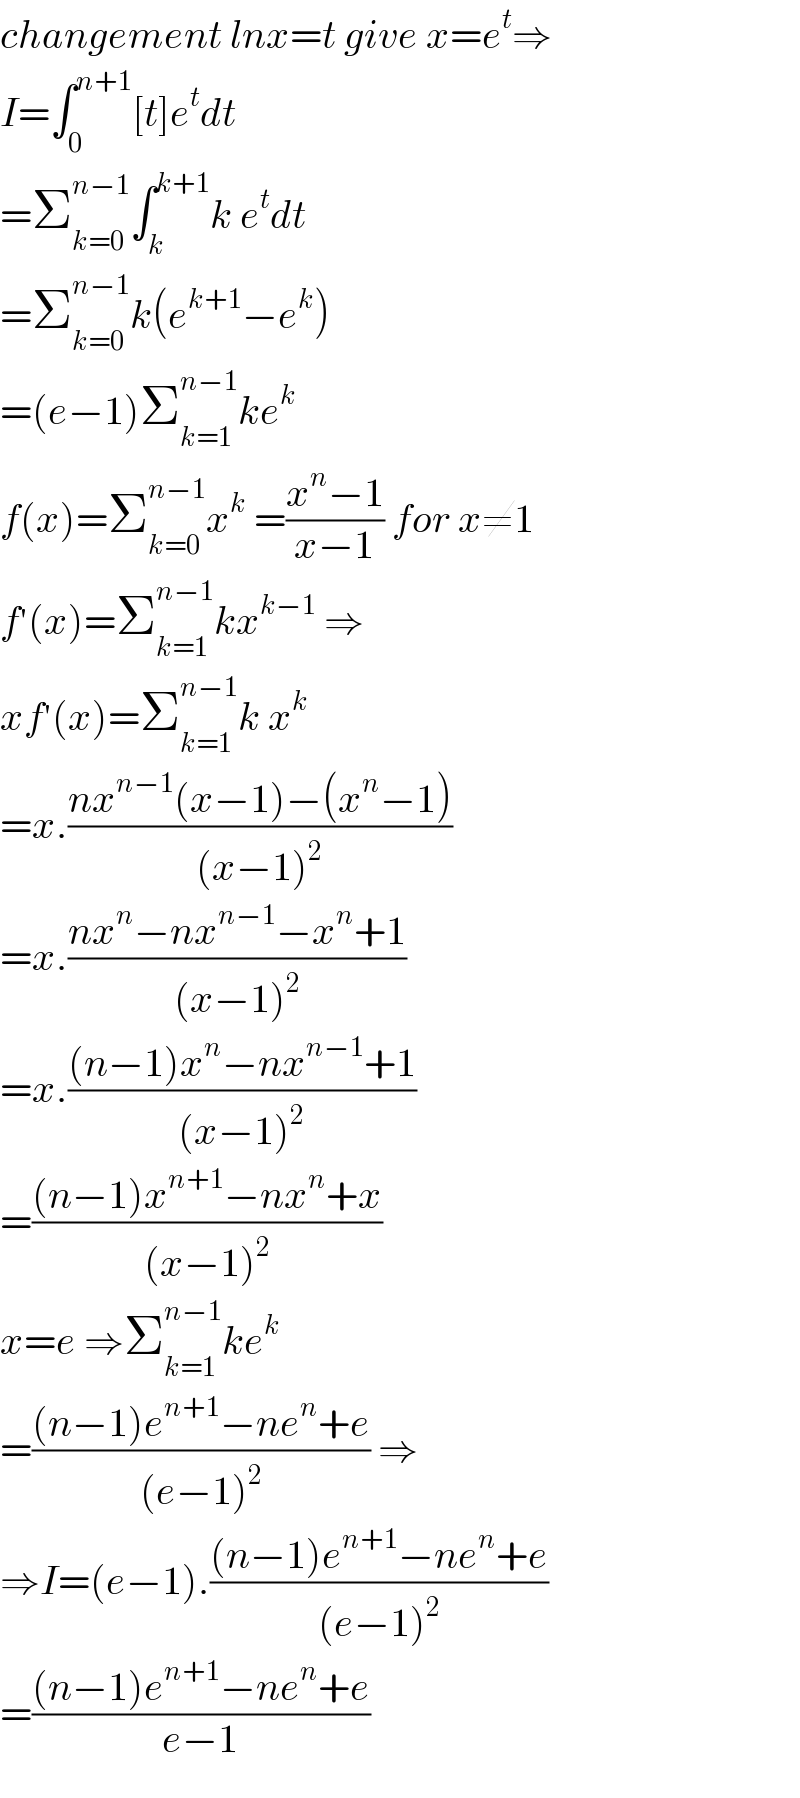 changement lnx=t give x=e^t ⇒  I=∫_0 ^(n+1) [t]e^t dt  =Σ_(k=0) ^(n−1) ∫_k ^(k+1) k e^t dt  =Σ_(k=0) ^(n−1) k(e^(k+1) −e^k )  =(e−1)Σ_(k=1) ^(n−1) ke^k   f(x)=Σ_(k=0) ^(n−1) x^k  =((x^n −1)/(x−1)) for x≠1  f^′ (x)=Σ_(k=1) ^(n−1) kx^(k−1)  ⇒  xf^′ (x)=Σ_(k=1) ^(n−1) k x^k   =x.((nx^(n−1) (x−1)−(x^n −1))/((x−1)^2 ))  =x.((nx^n −nx^(n−1) −x^n +1)/((x−1)^2 ))  =x.(((n−1)x^n −nx^(n−1) +1)/((x−1)^2 ))  =(((n−1)x^(n+1) −nx^n +x)/((x−1)^2 ))  x=e ⇒Σ_(k=1) ^(n−1) ke^k   =(((n−1)e^(n+1) −ne^n +e)/((e−1)^2 )) ⇒  ⇒I=(e−1).(((n−1)e^(n+1) −ne^n +e)/((e−1)^2 ))  =(((n−1)e^(n+1) −ne^n +e)/(e−1))  